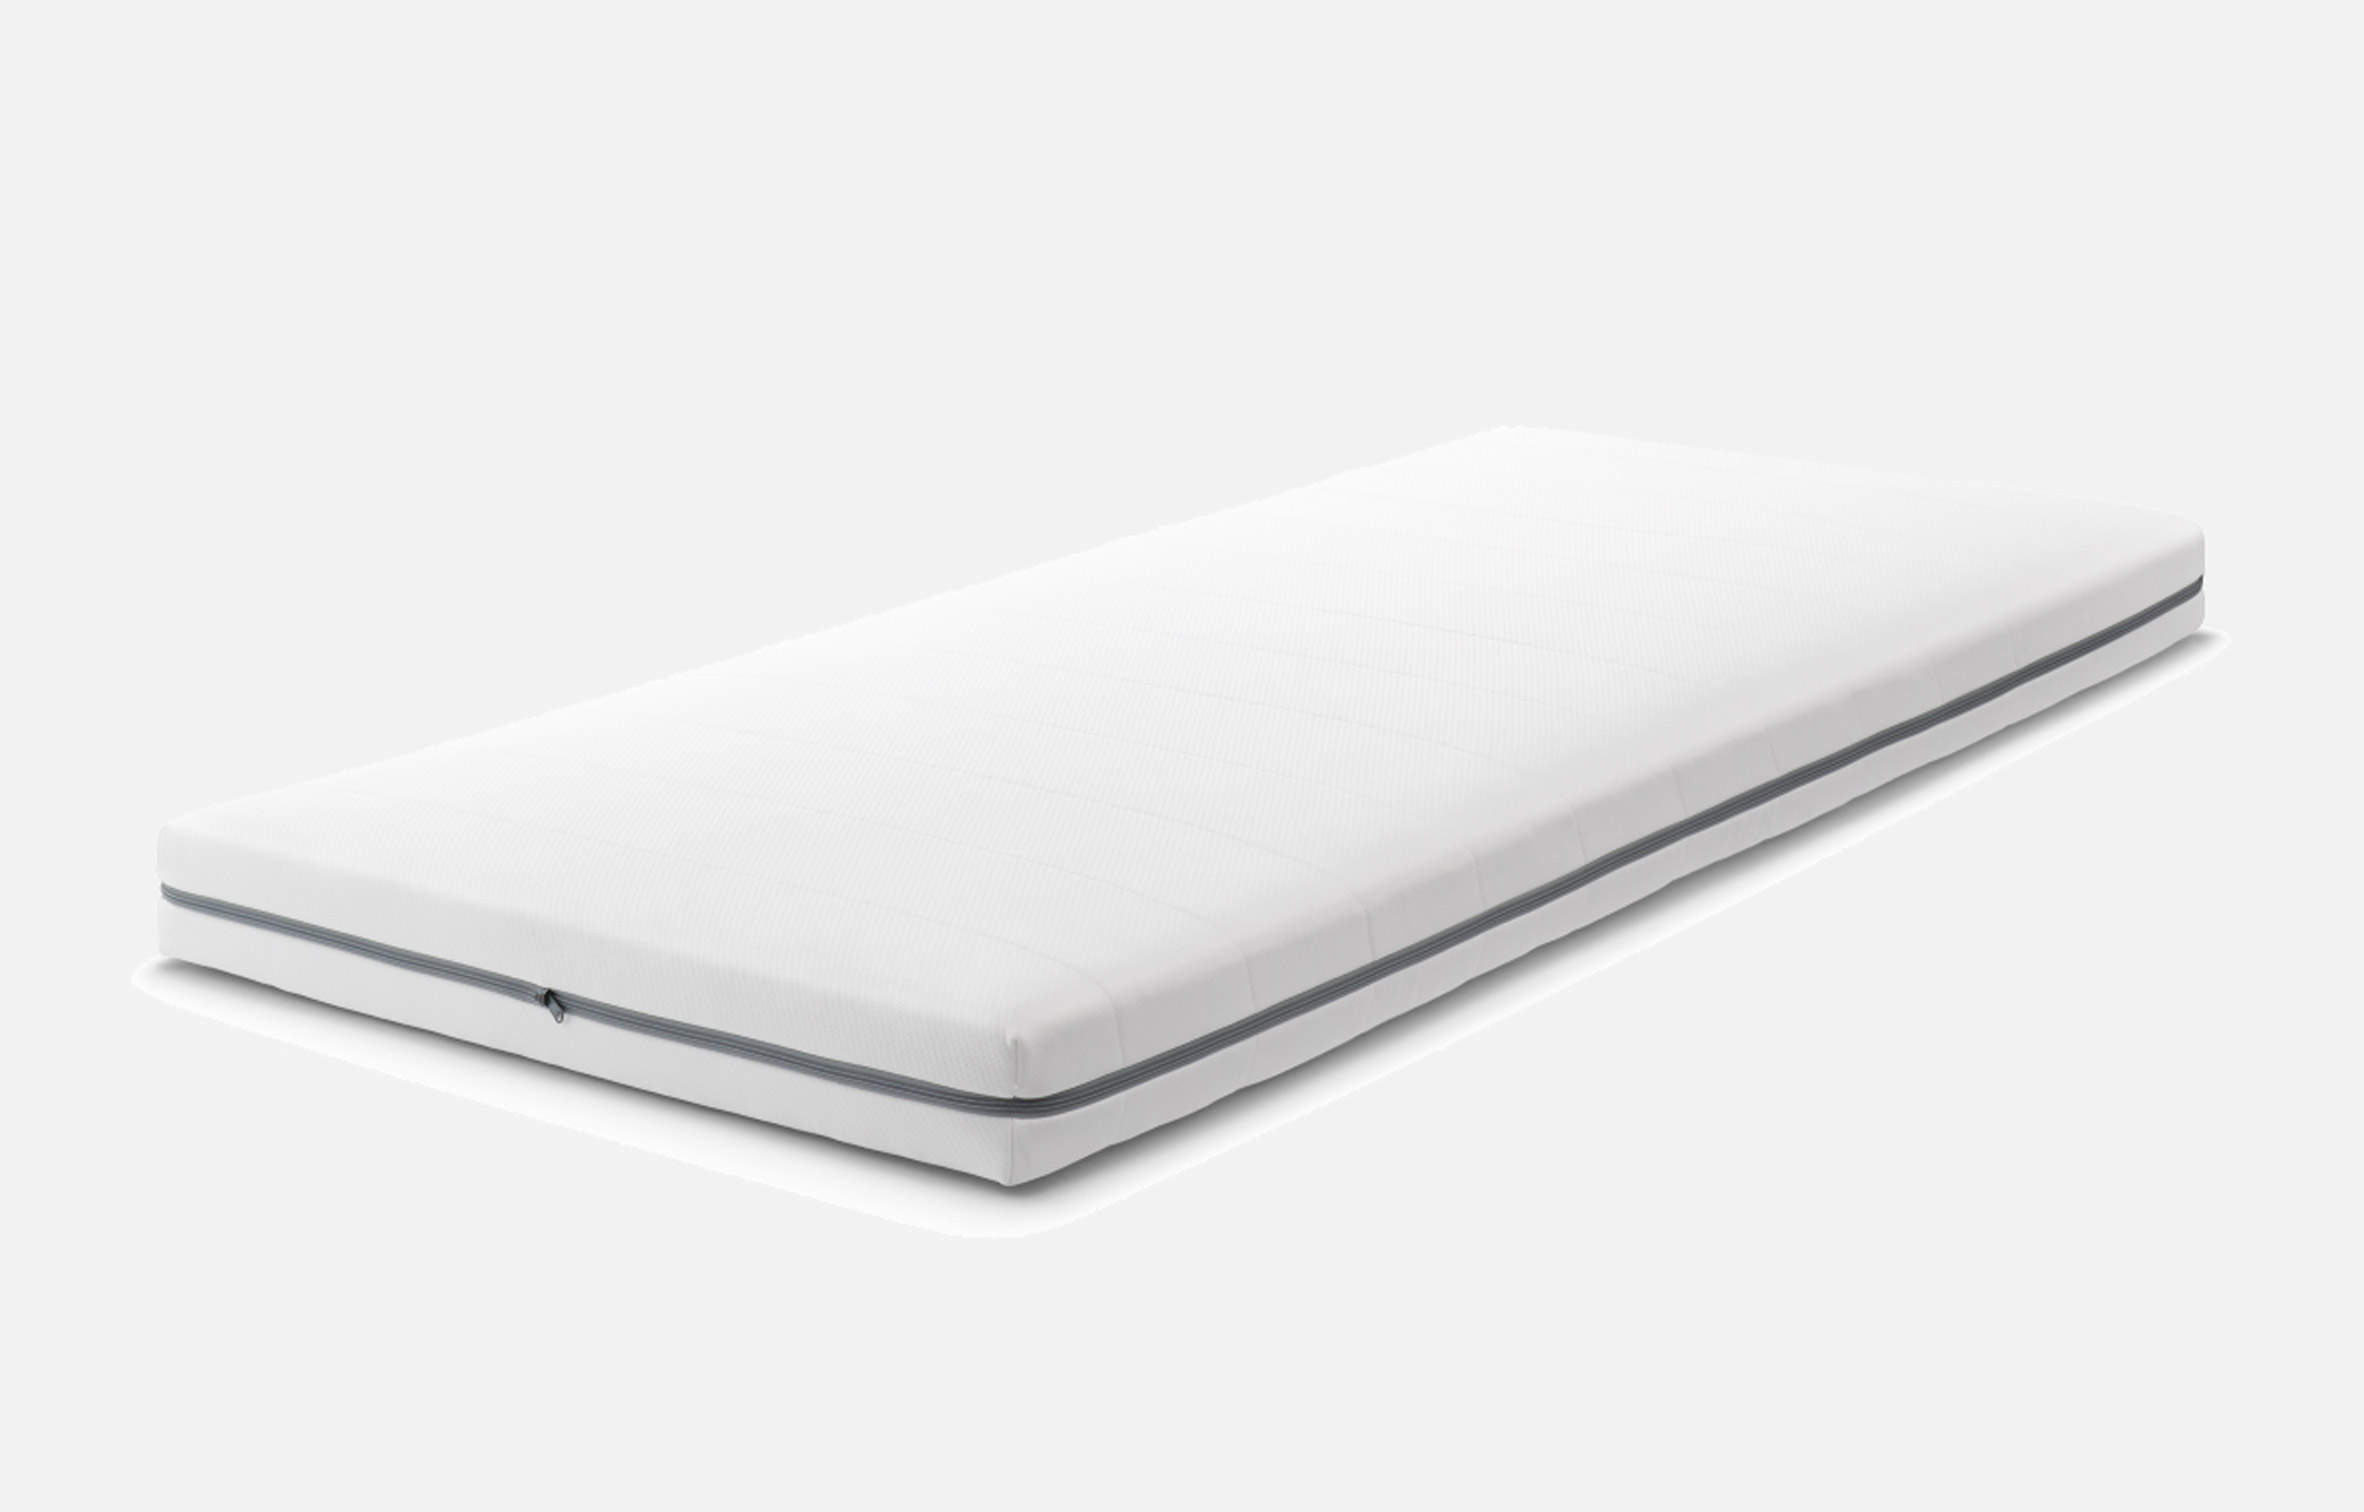 Airweave's white mattress